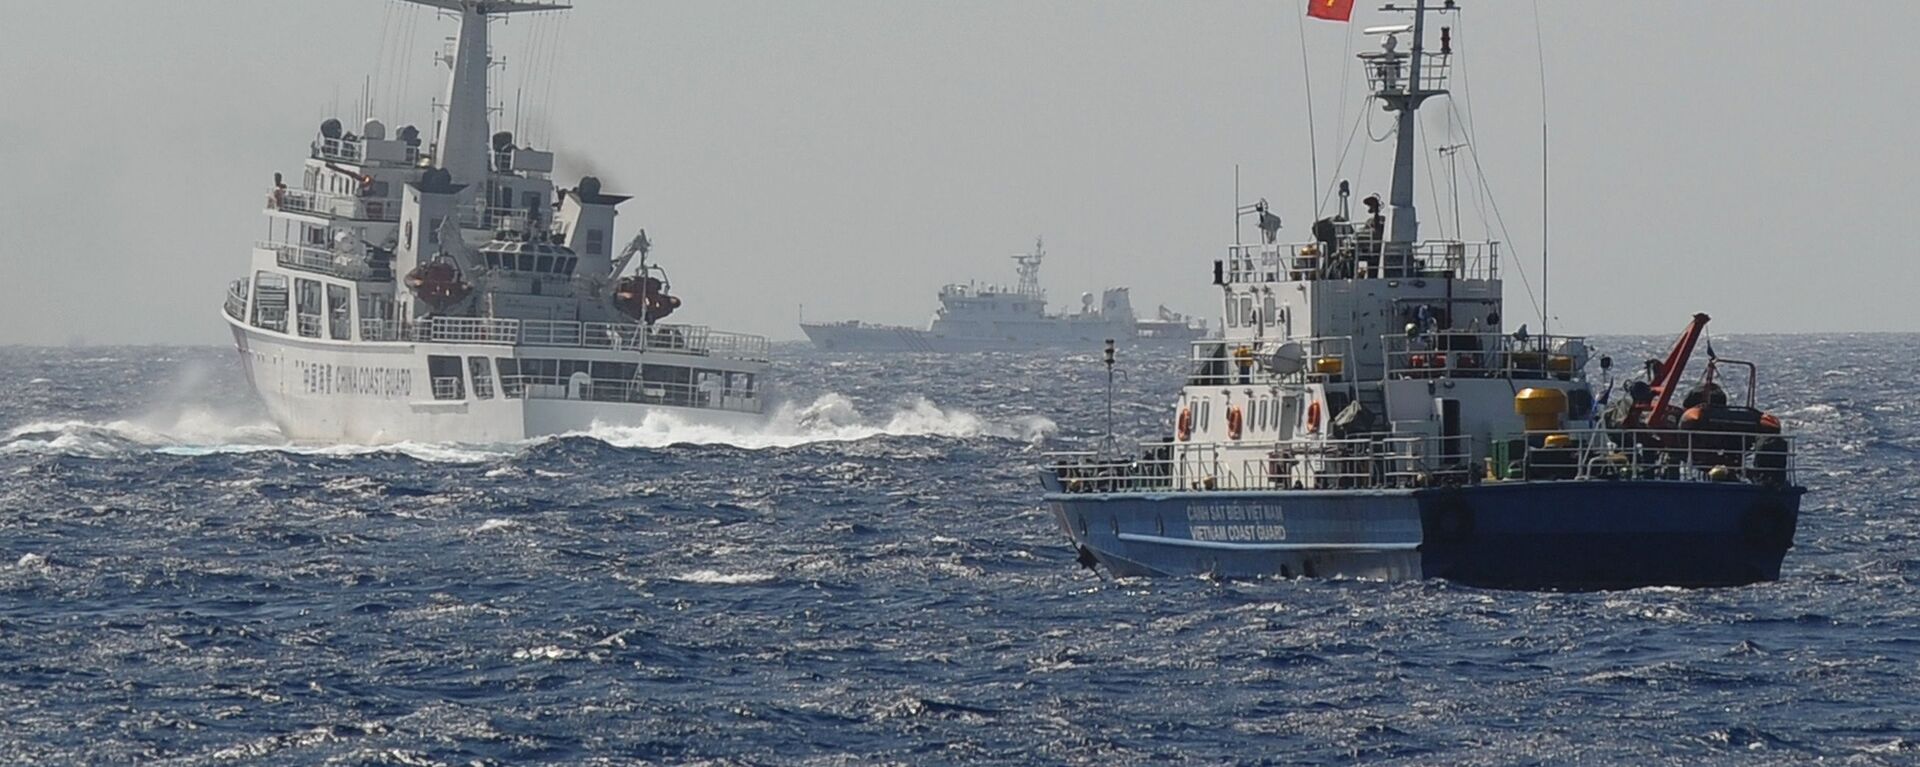 Tàu Cảnh sát biển Việt Nam và Trung Quốc gần vị trí đặt giàn khoan dầu của Trung Quốc trên Biển Đông - Sputnik Việt Nam, 1920, 31.08.2021